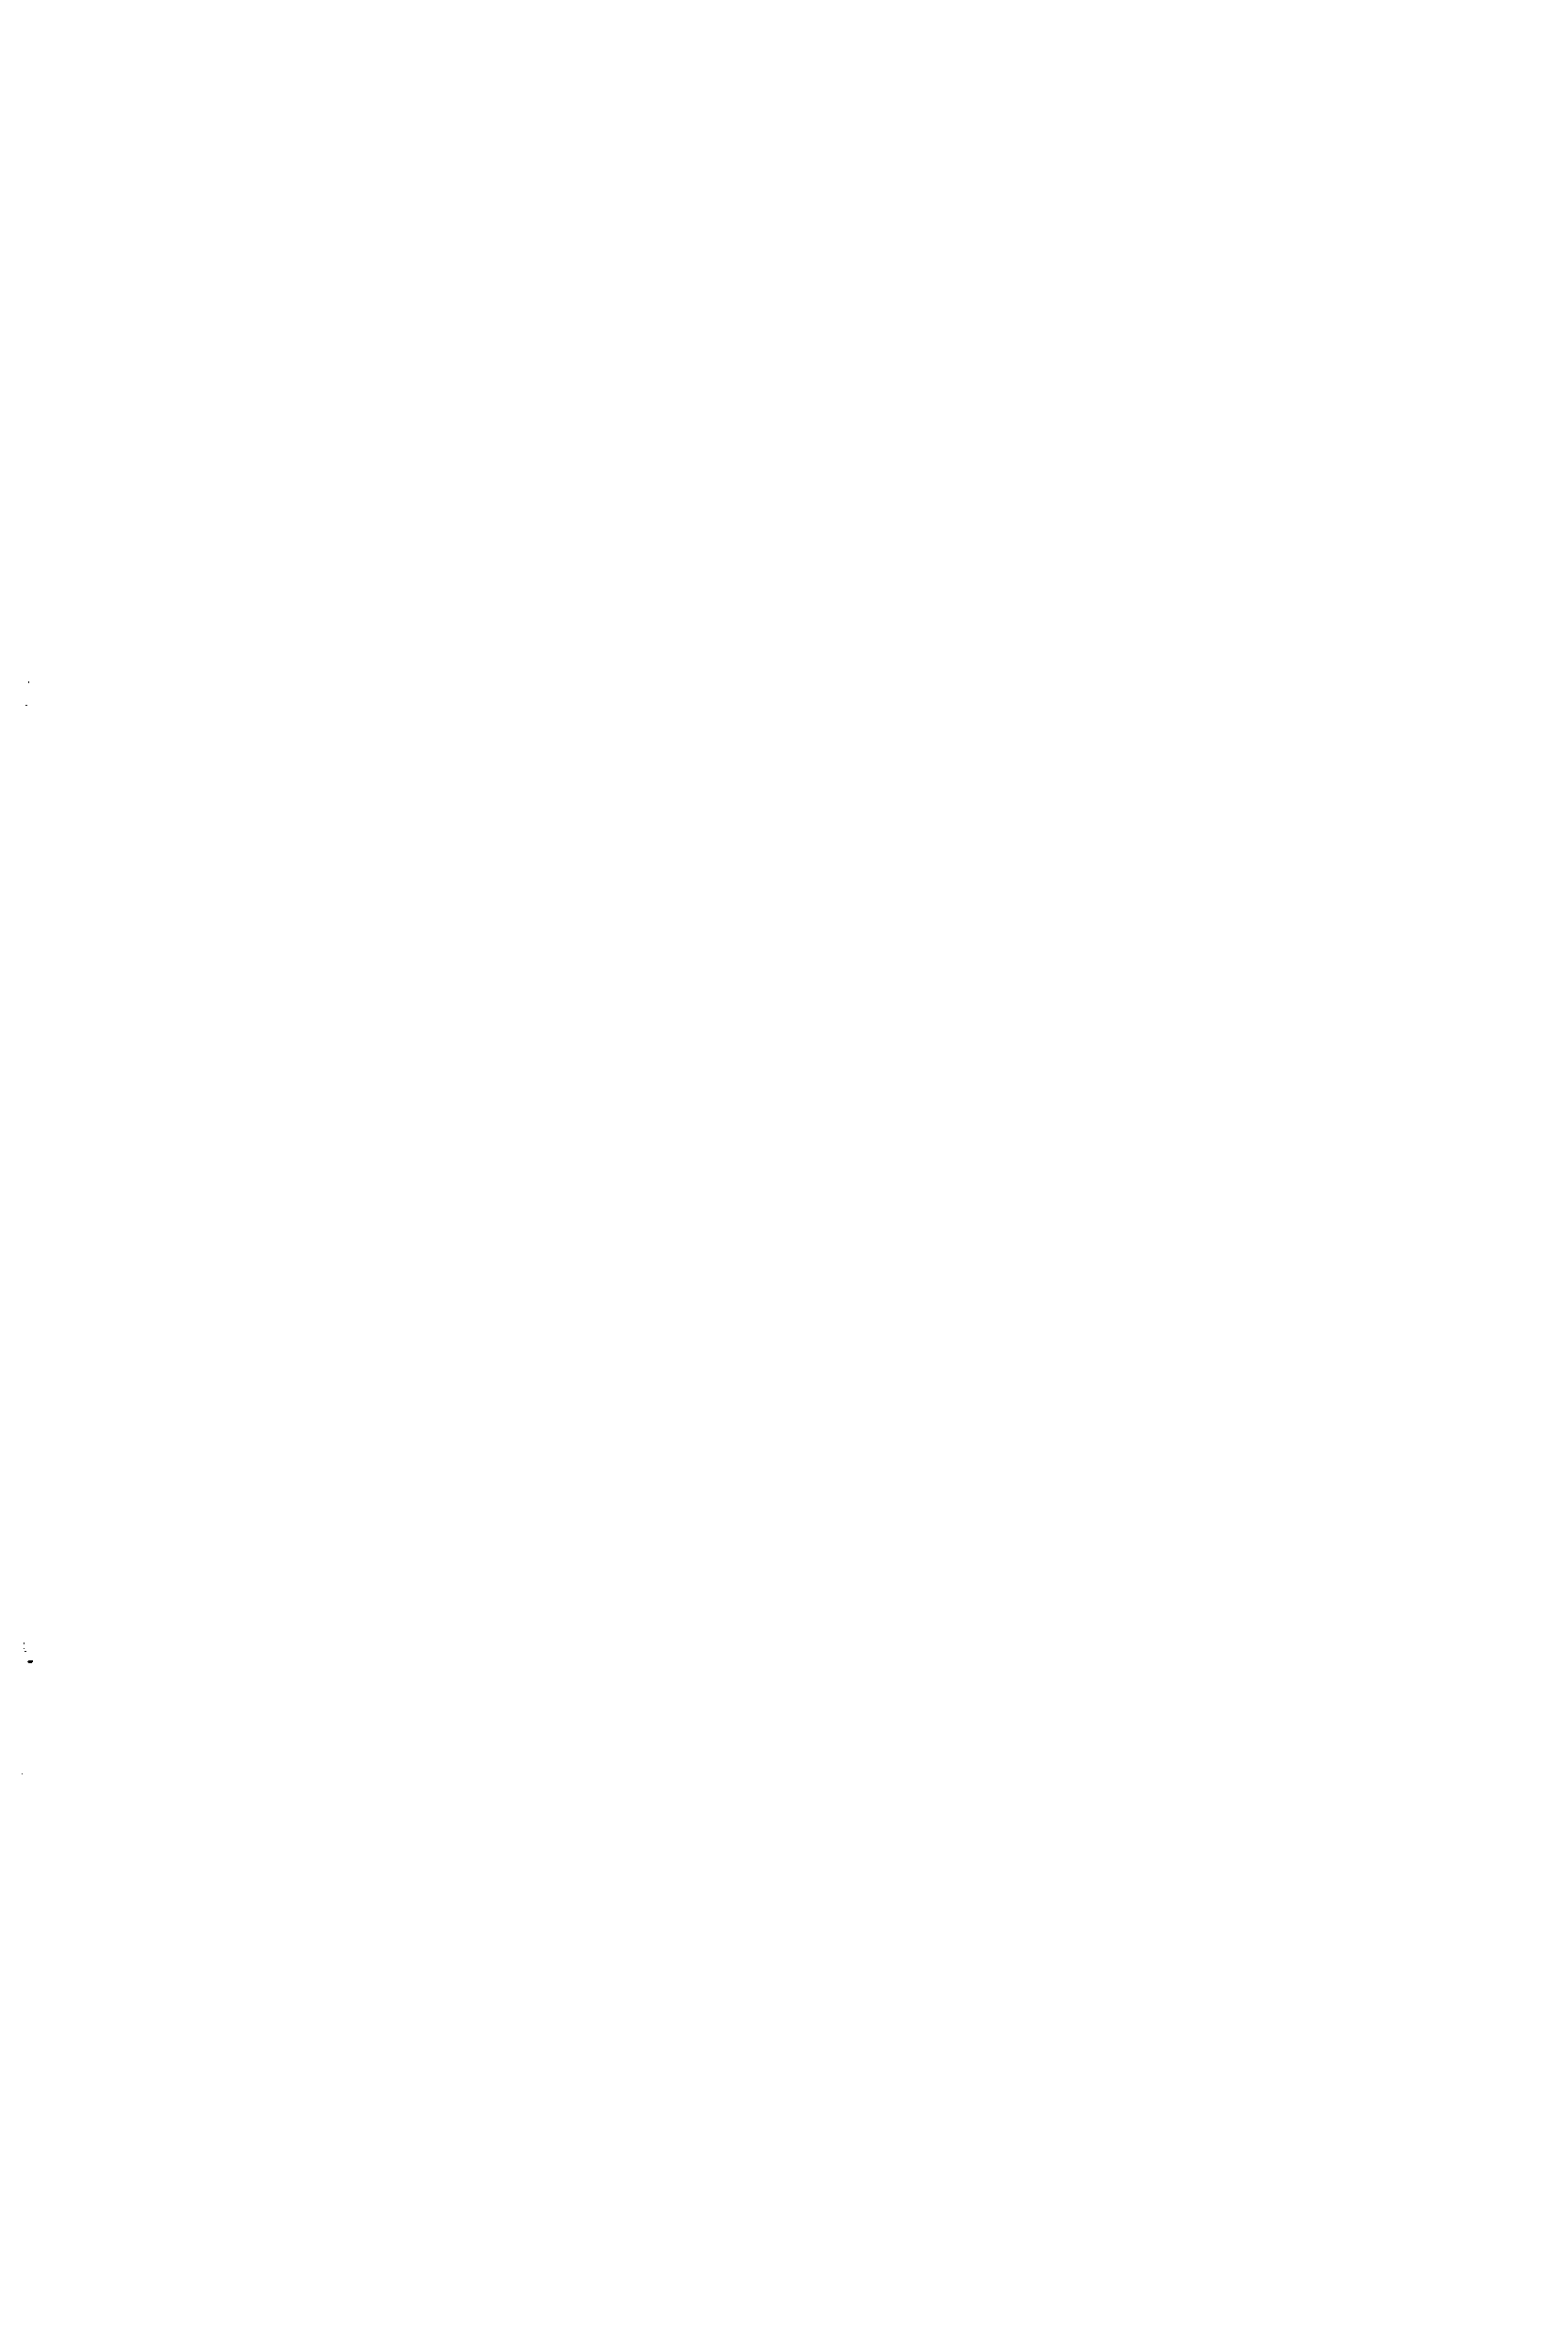 Рис. 10.13. Установка горизонтальных цилиндрических аппаратов на седловидные (а) и тавровые (б) фундаменты
